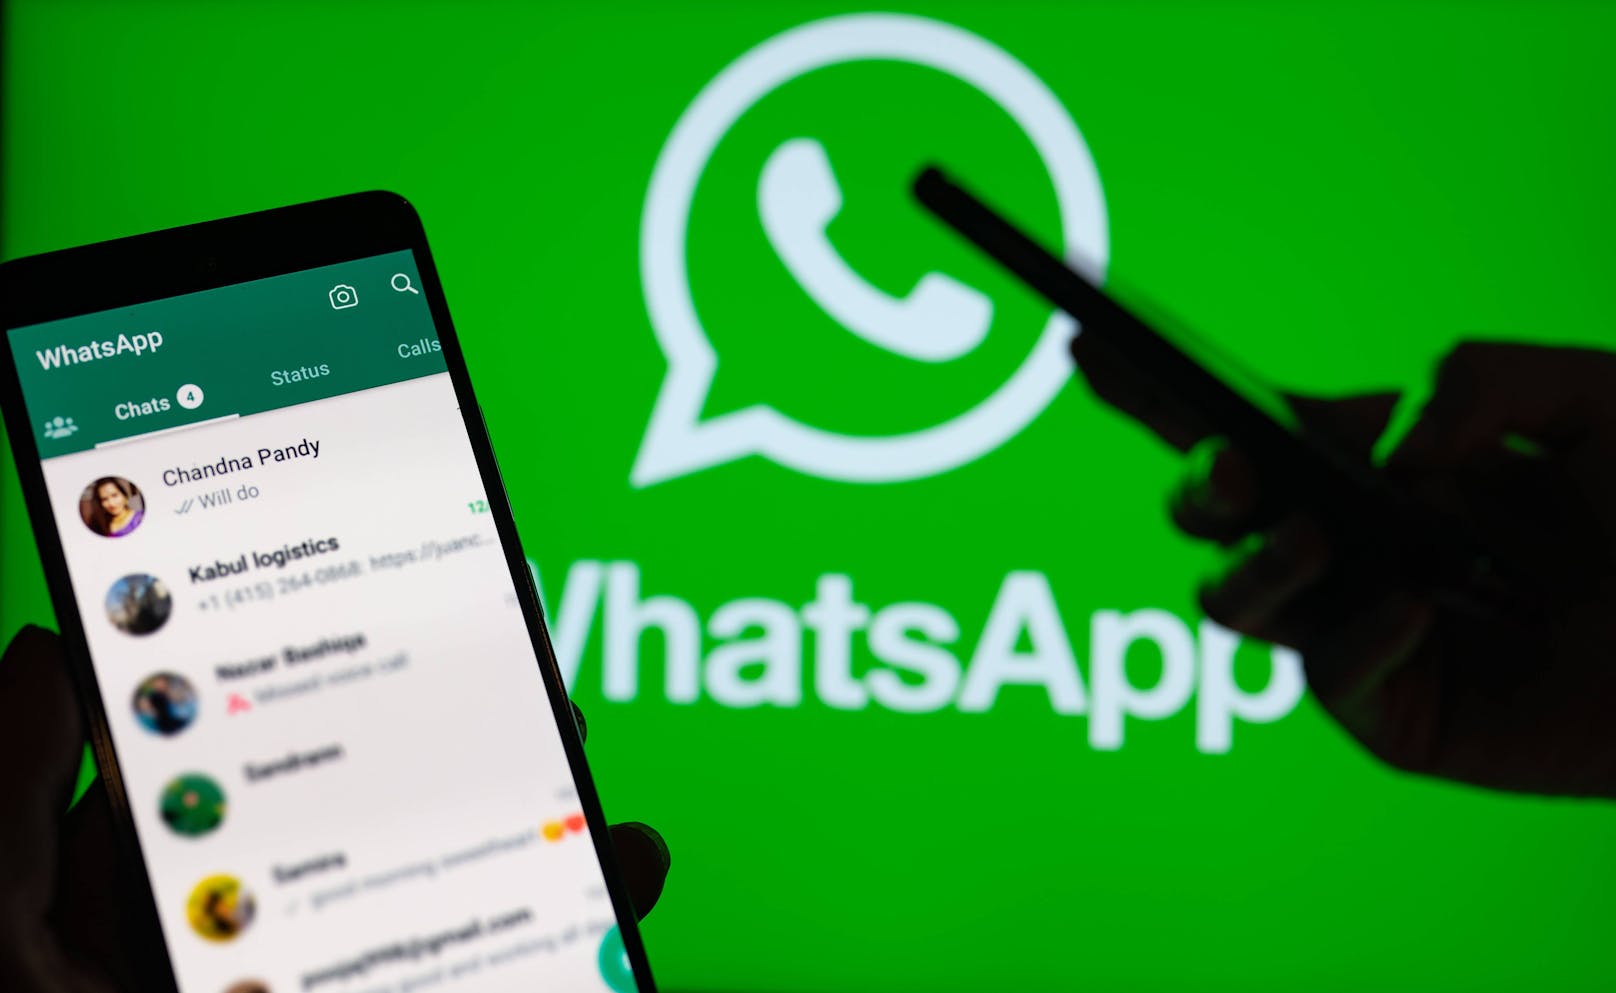 Der Instant-Messaging-Dienst WhatsApp kündigt neue Funktionen an.